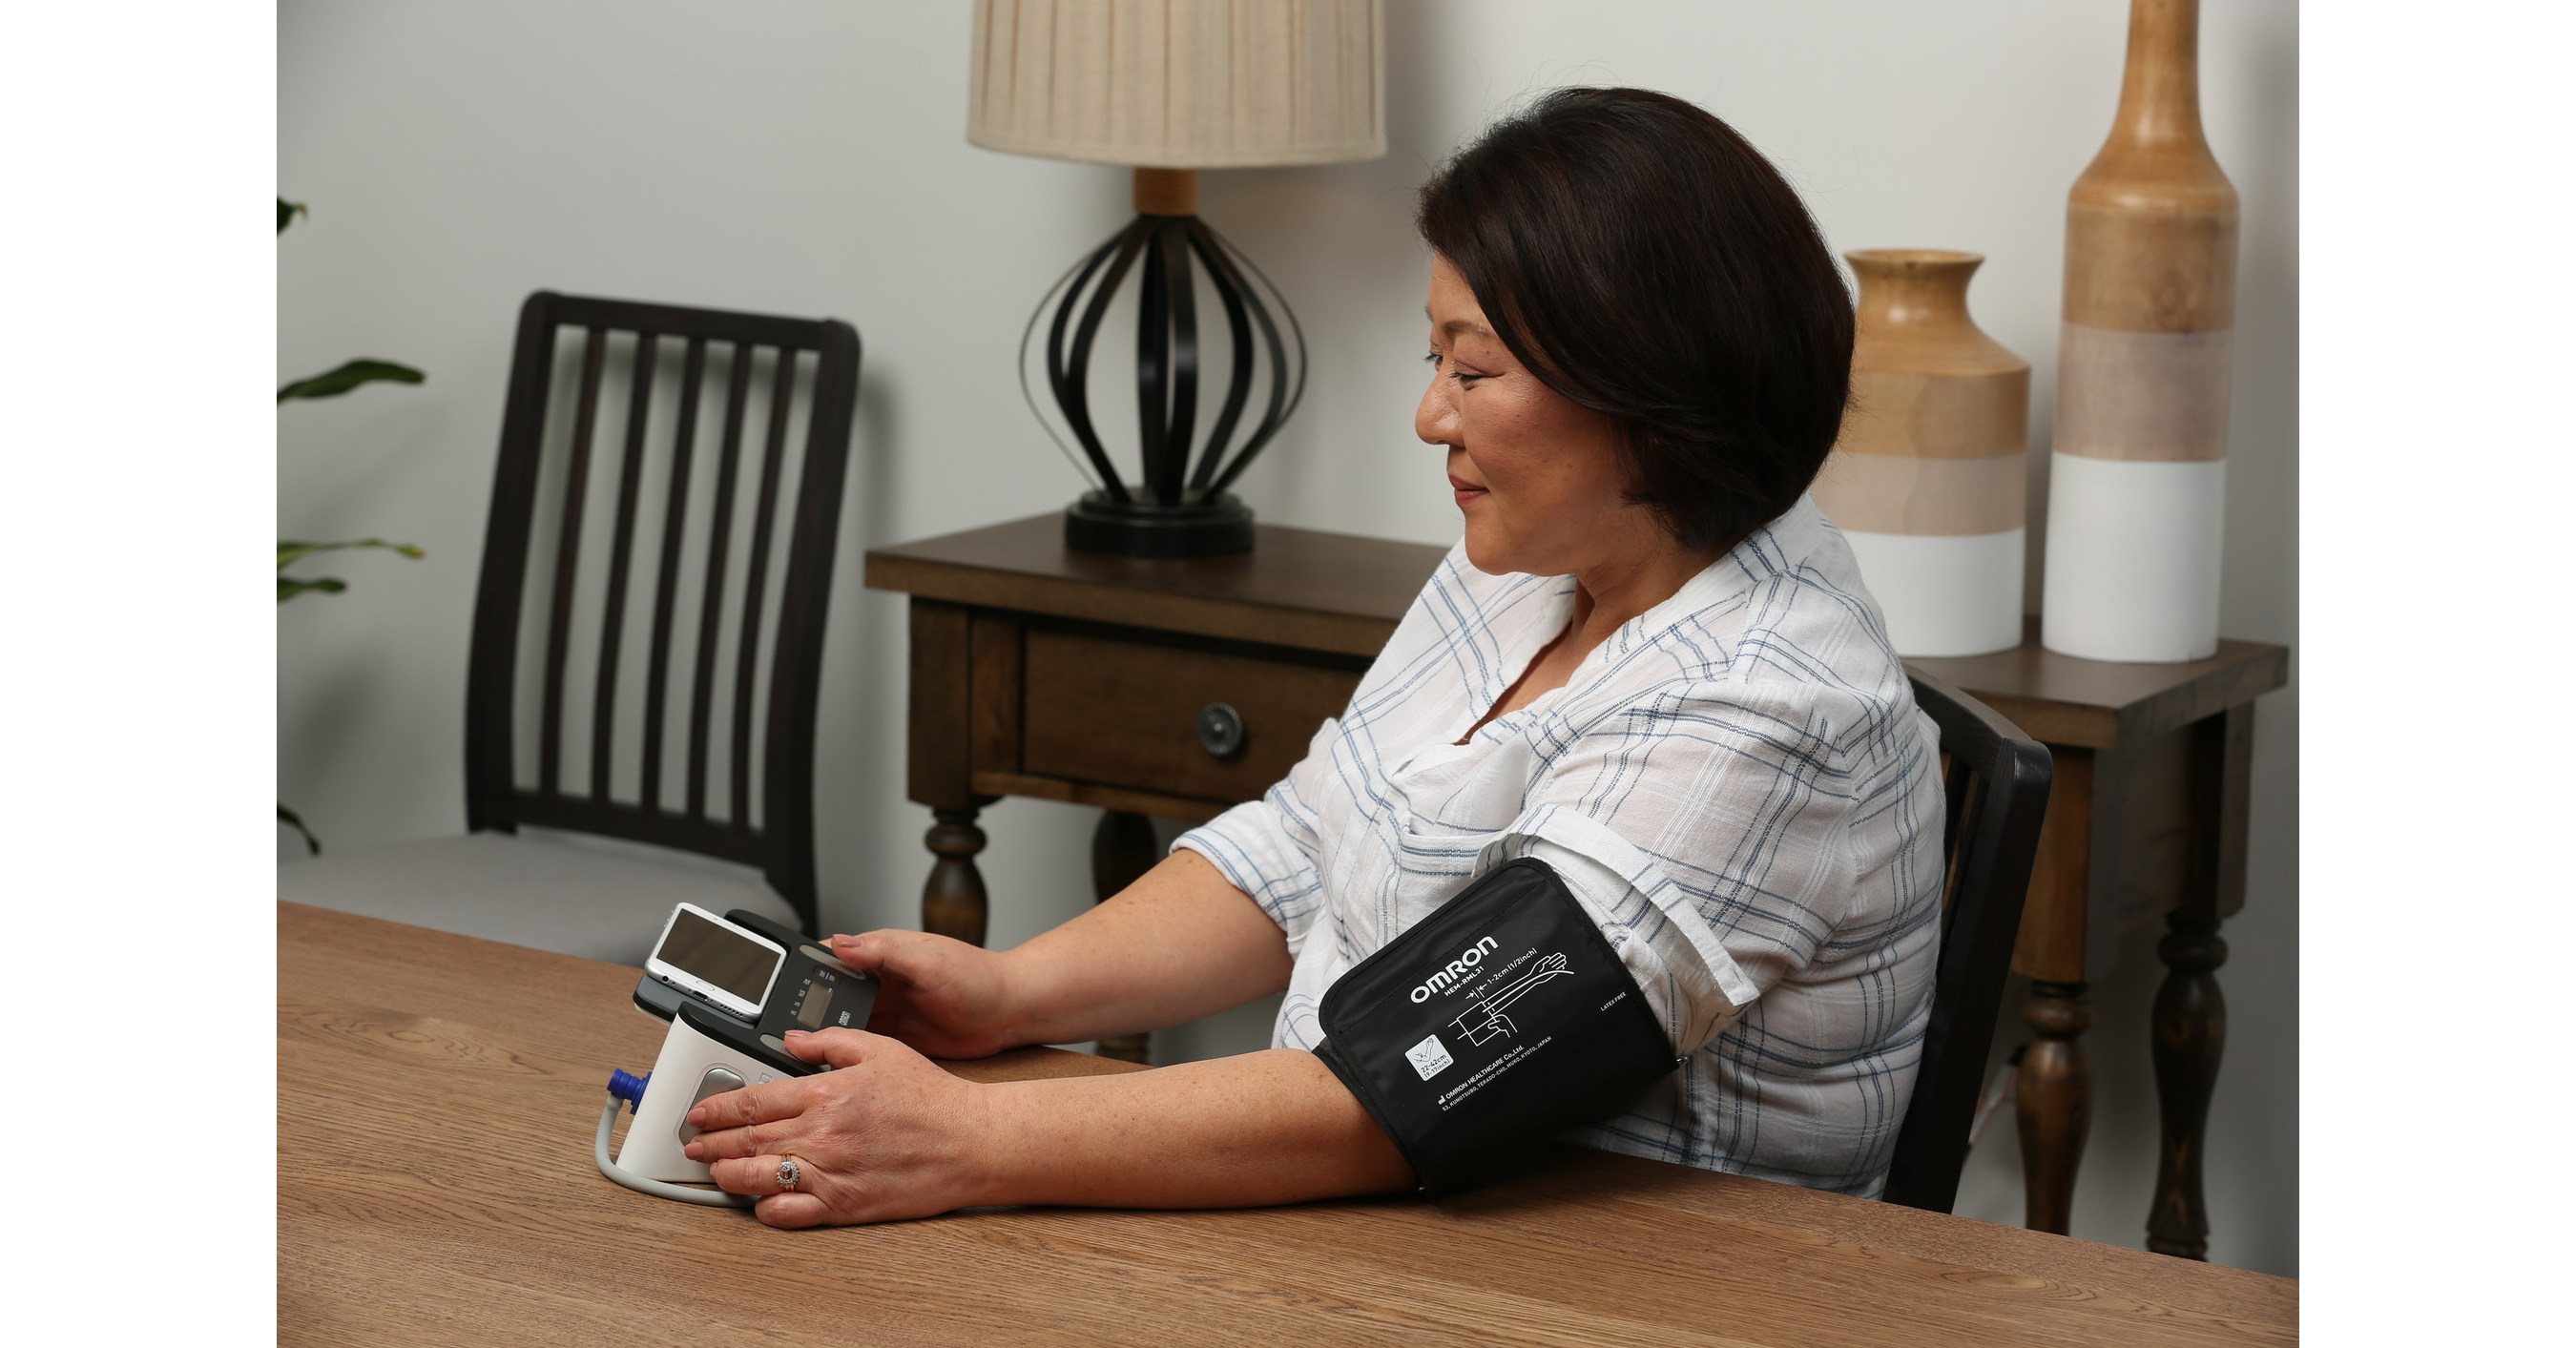 Omron Blood Pressure Monitor + EKG